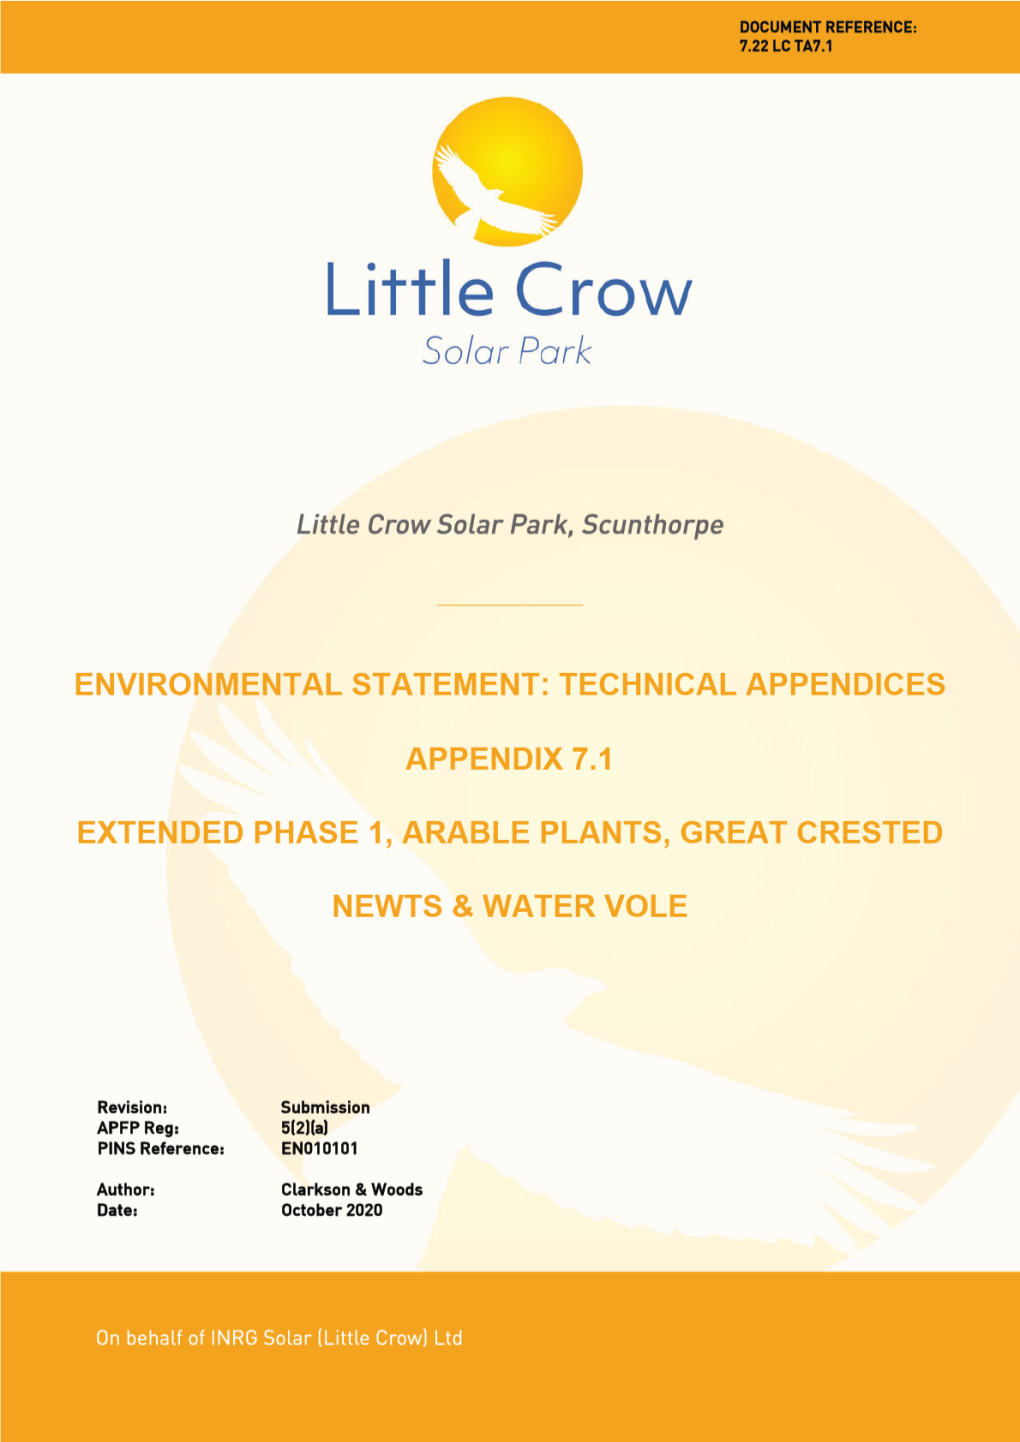 Little Crow Solar Park, Scunthorpe